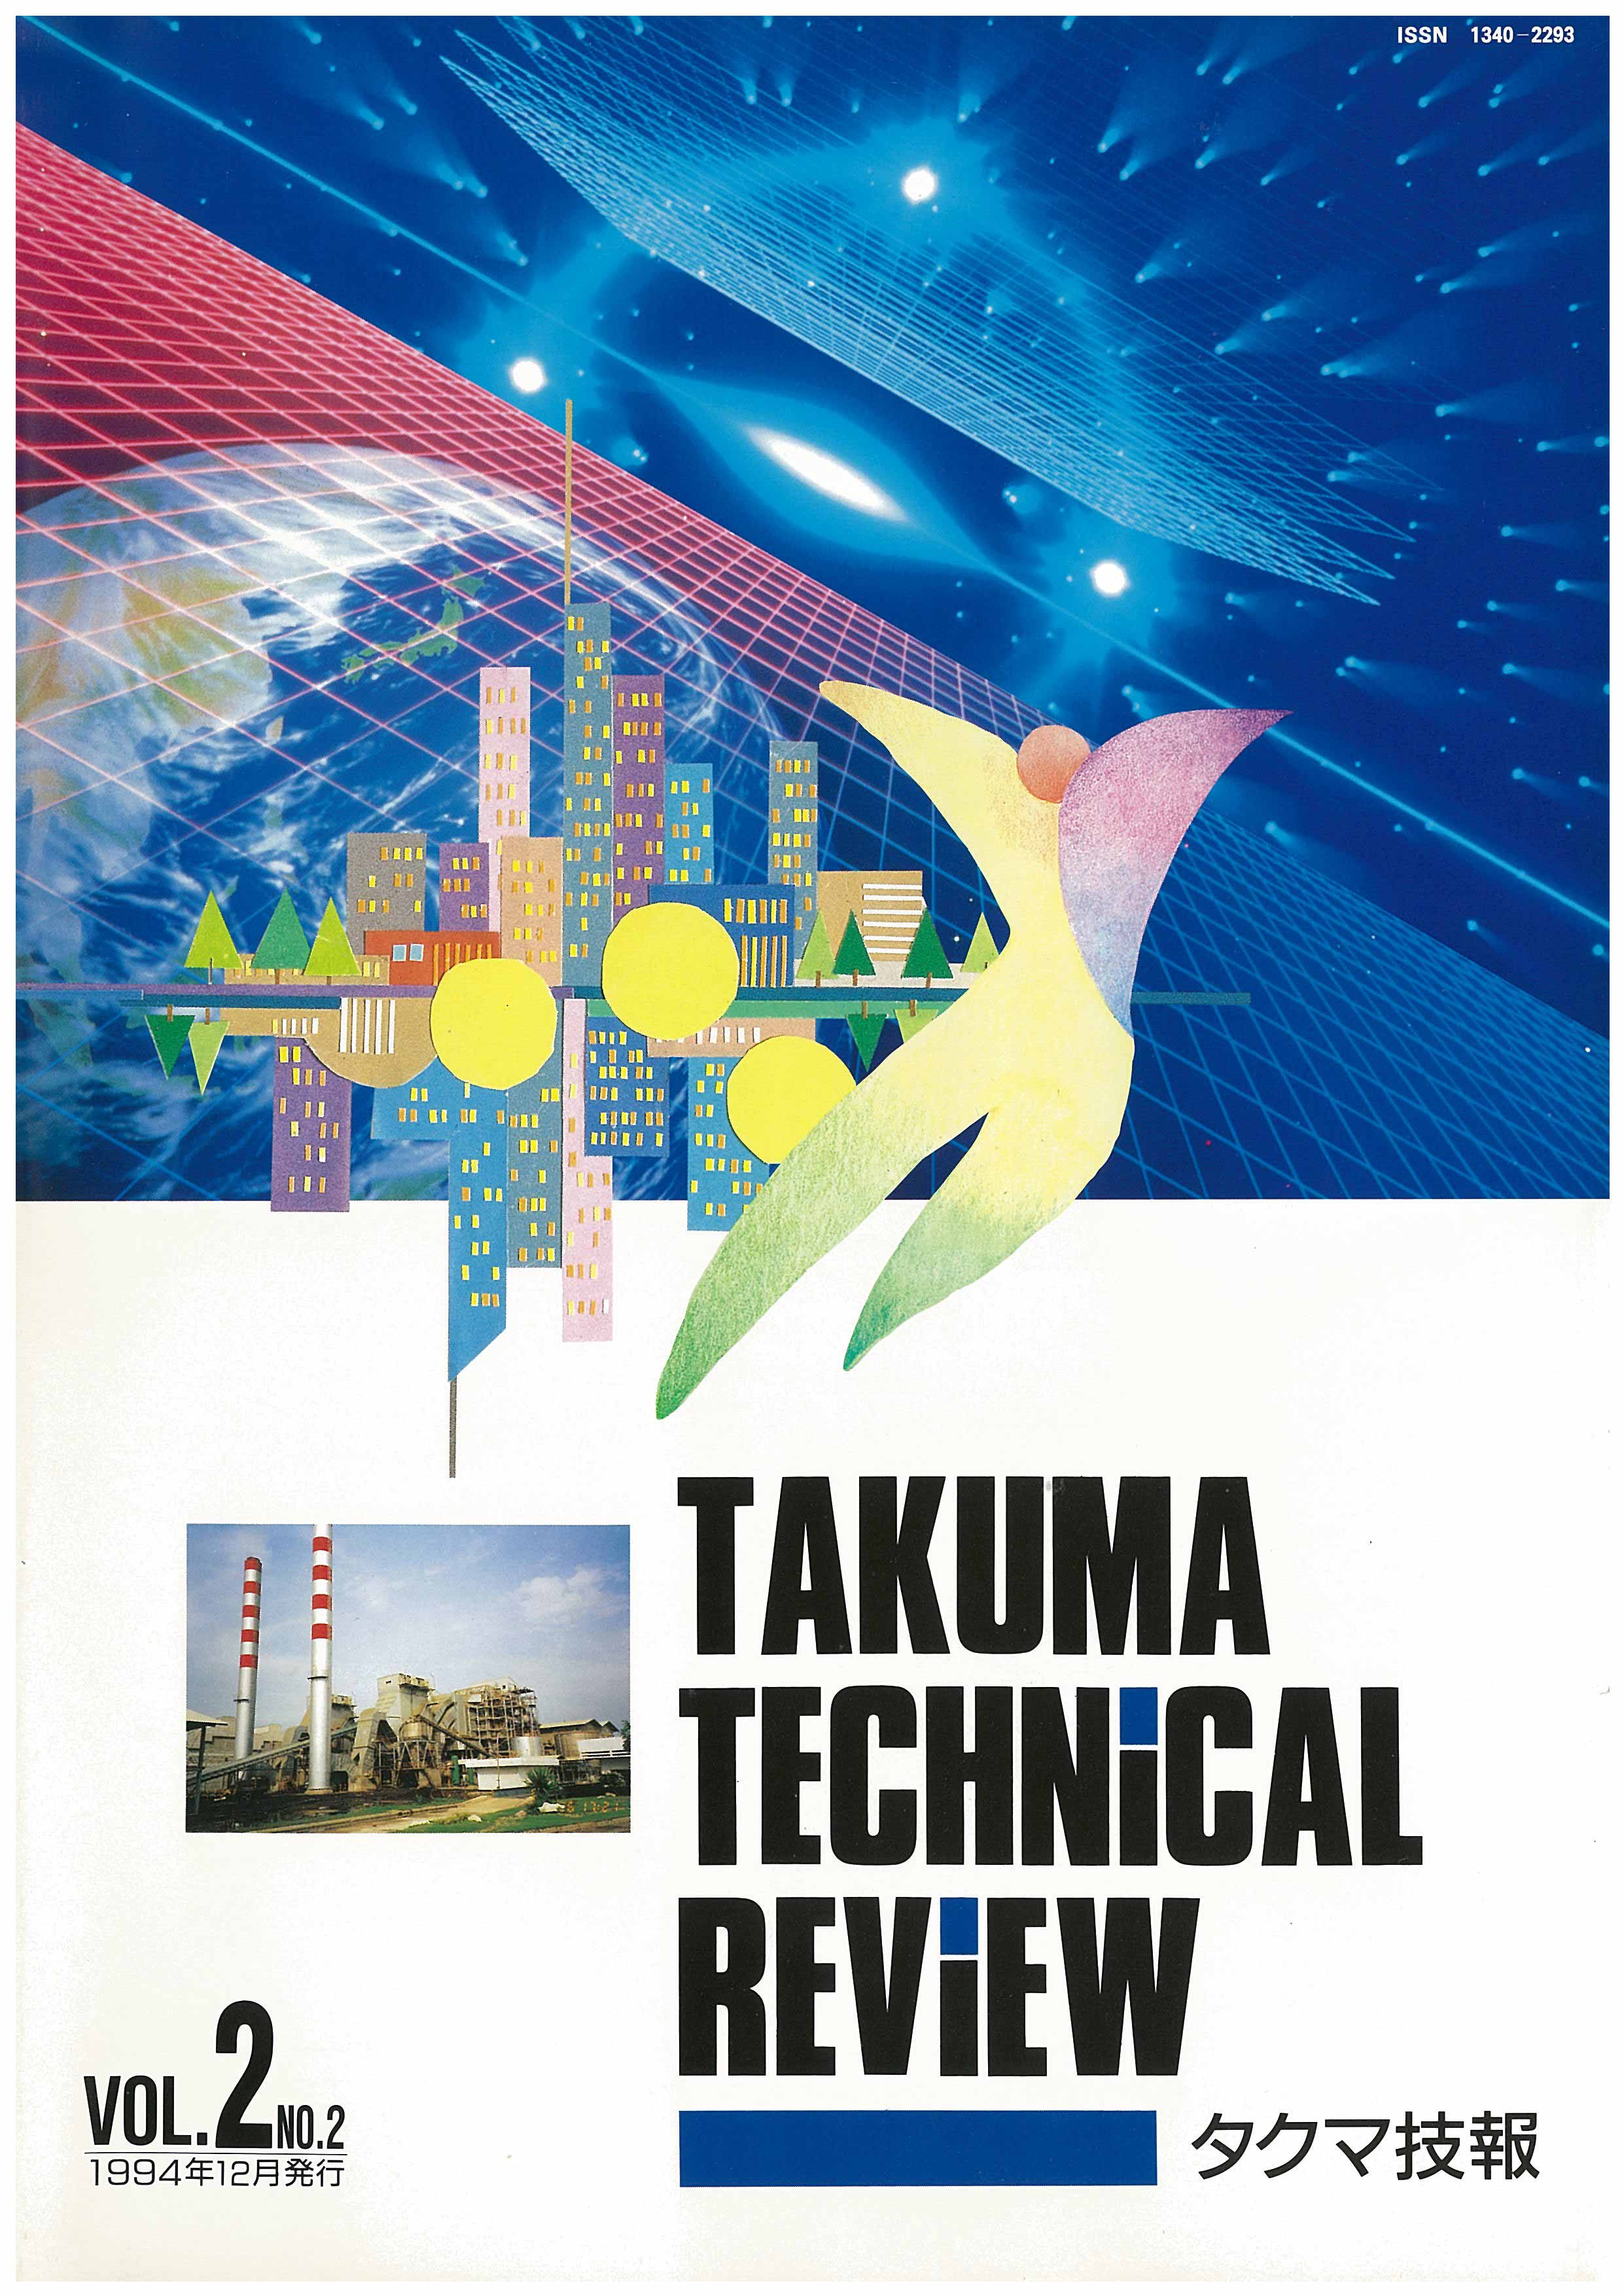 タクマ技報 VOL.2 NO.2（1994年12月発行）